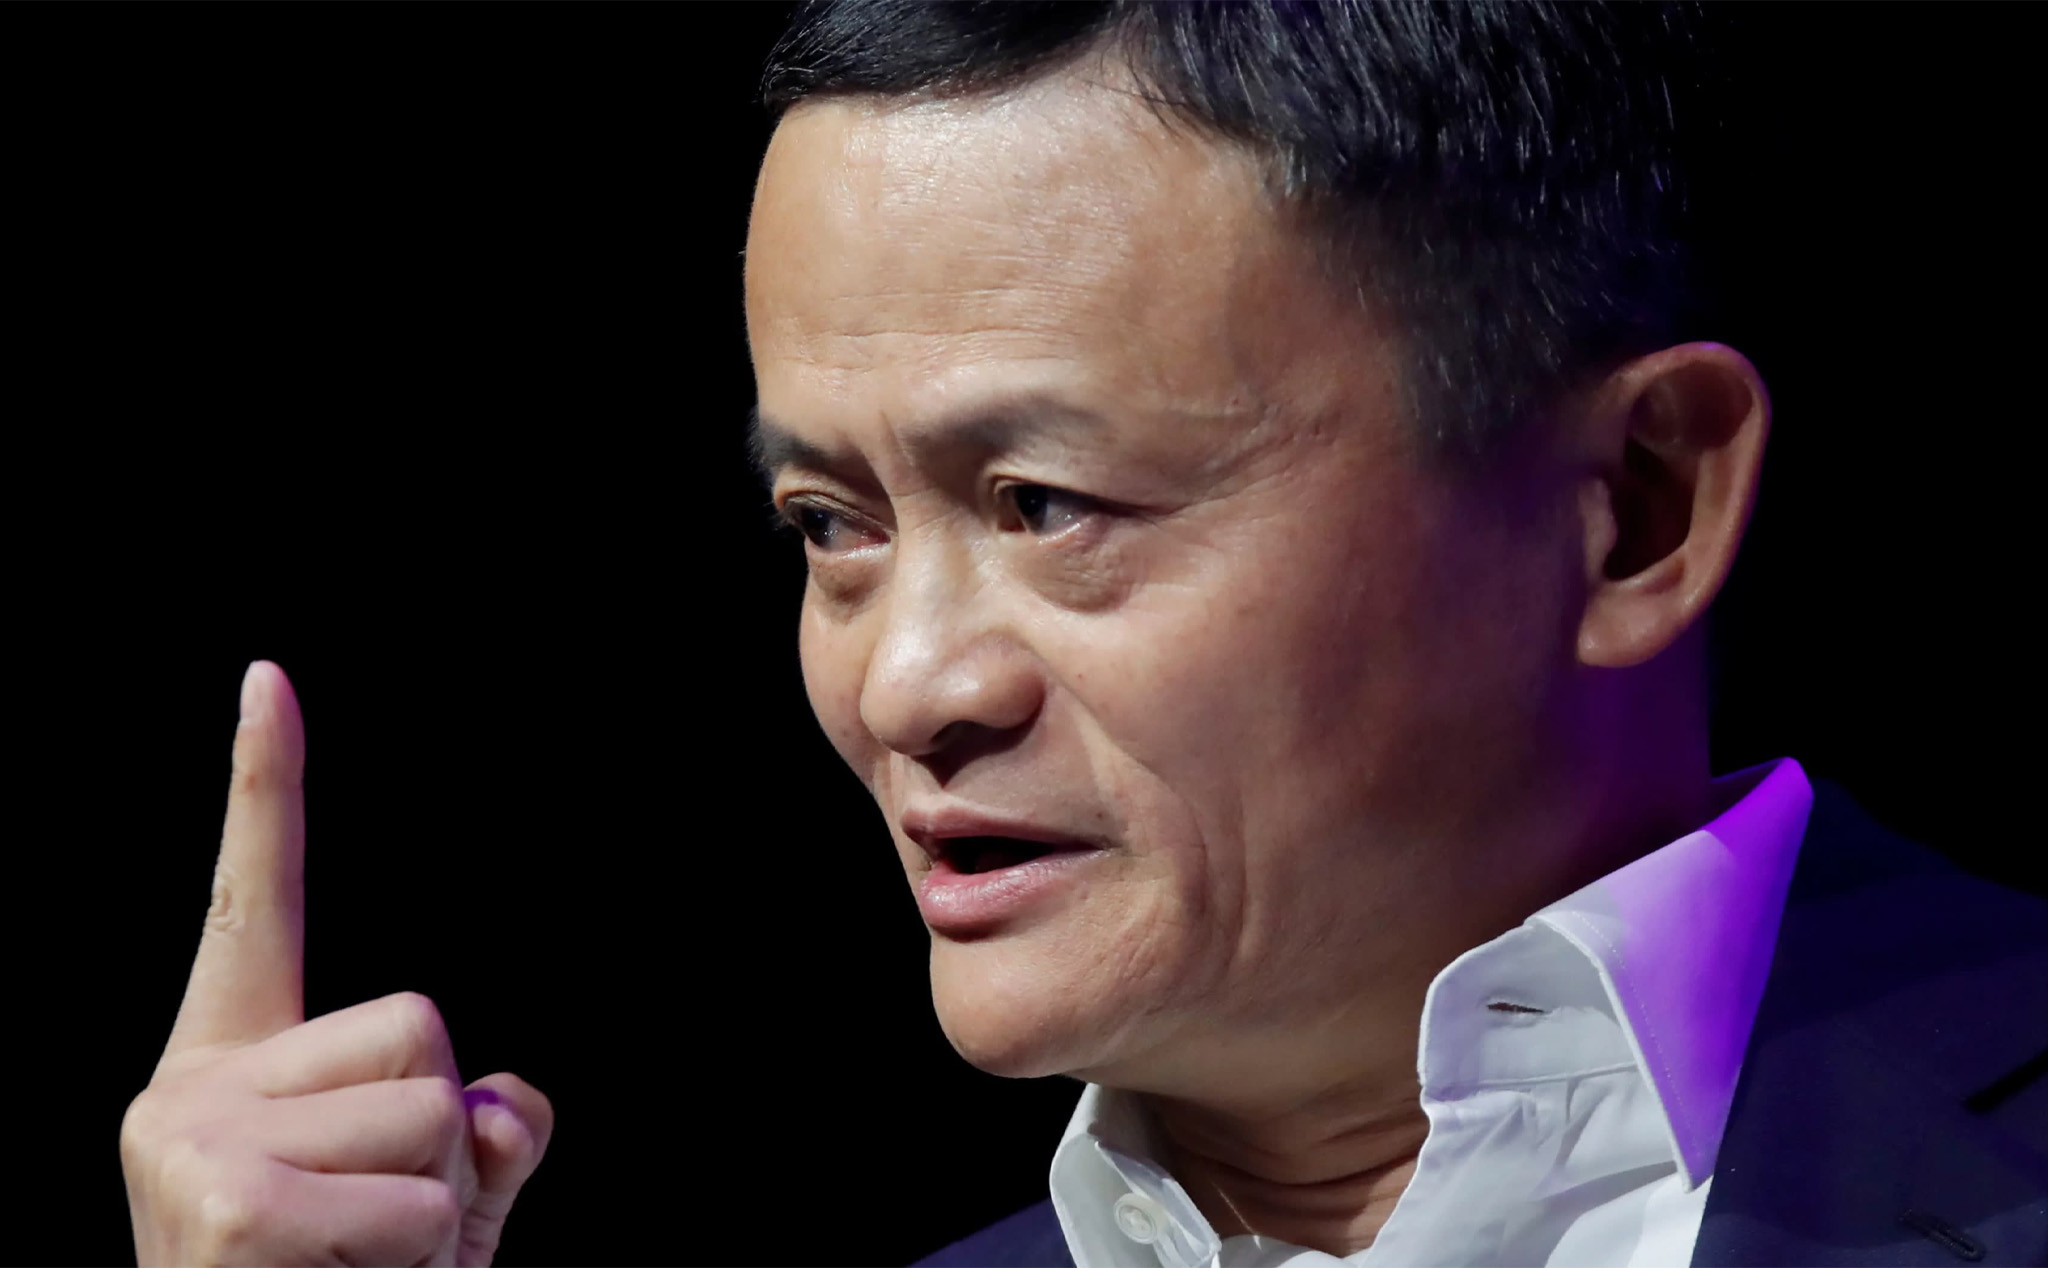 Jack Ma chính thức từ nhiệm vị trí chủ tịch Alibaba